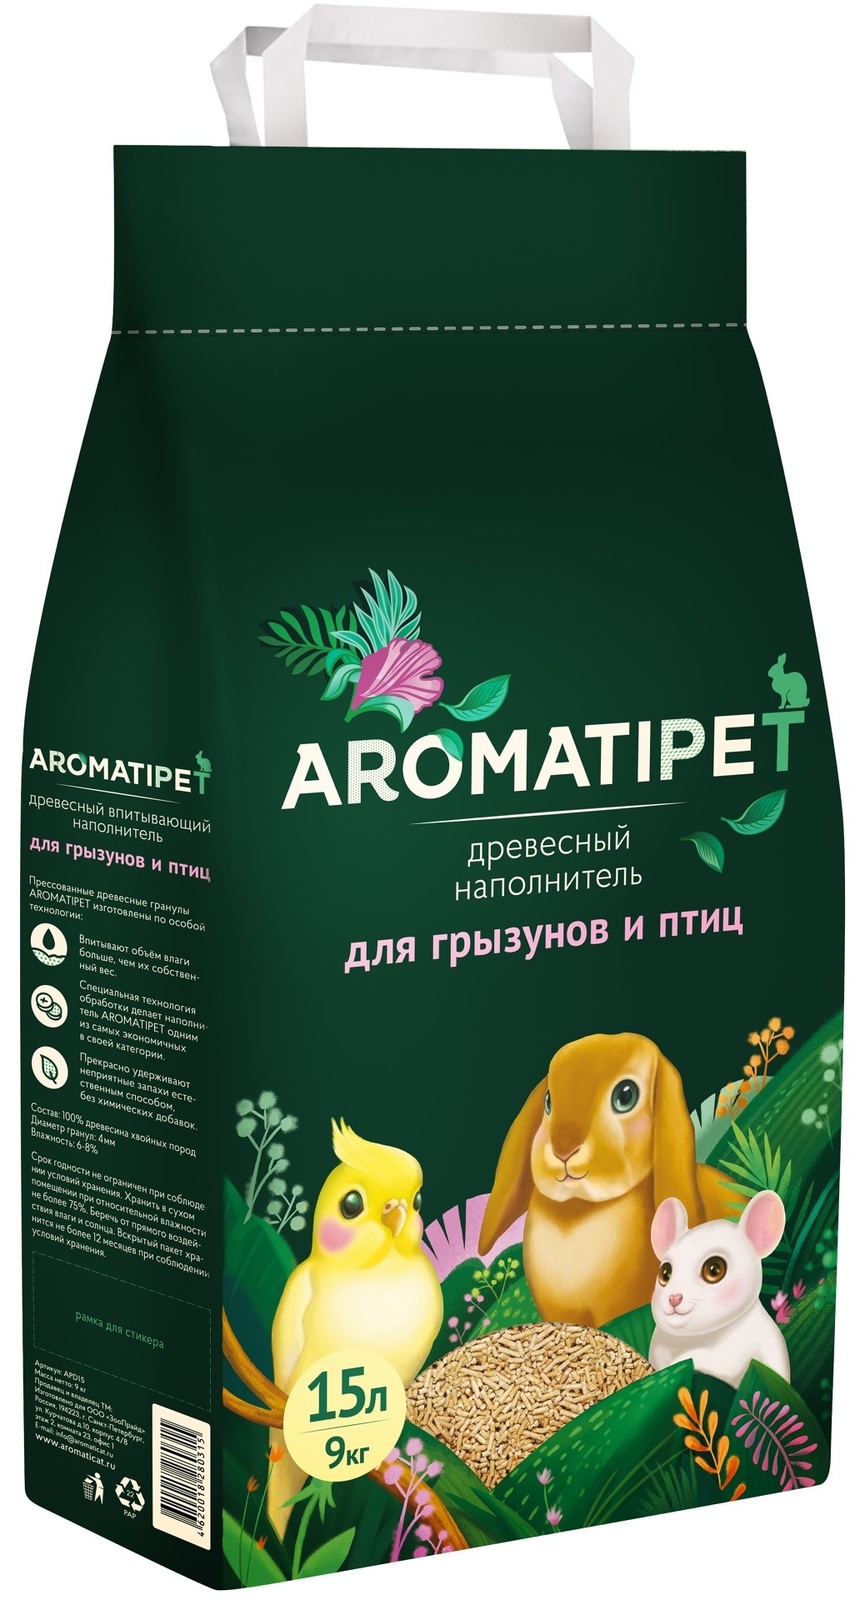 AromatiPet древесный наполнитель для грызунов и птиц (9 кг)